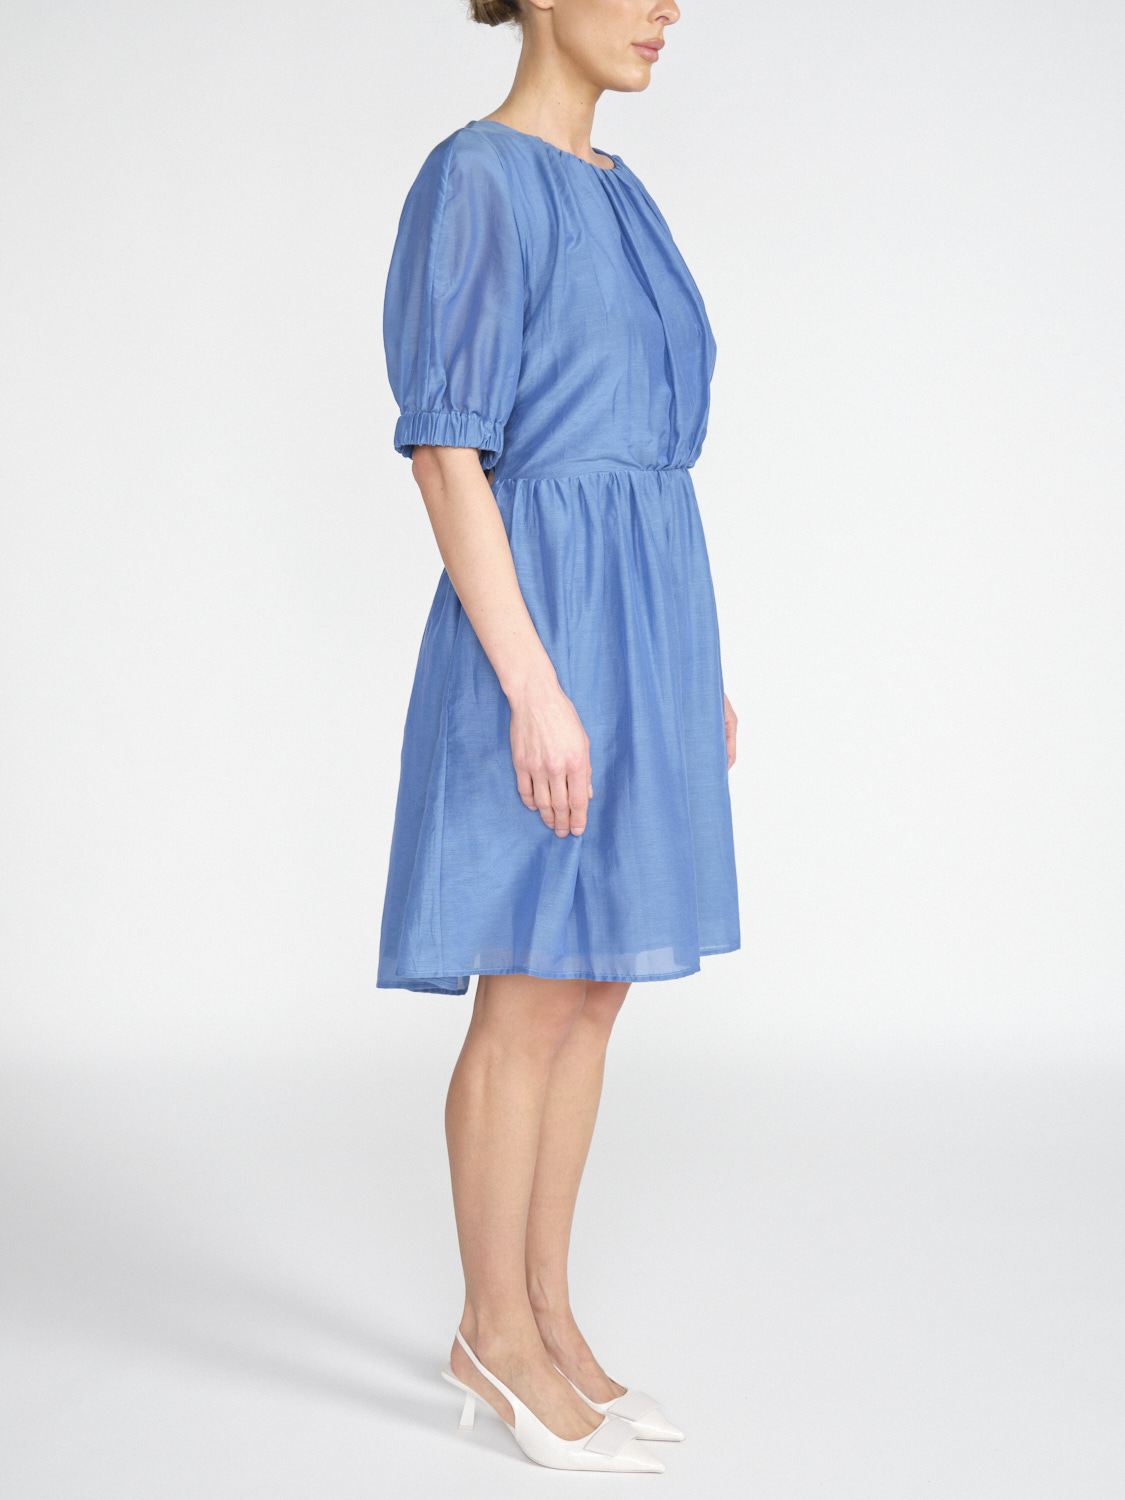 Semicouture Leichtes Kleid aus Baumwoll-Seiden-Mix   blau 34